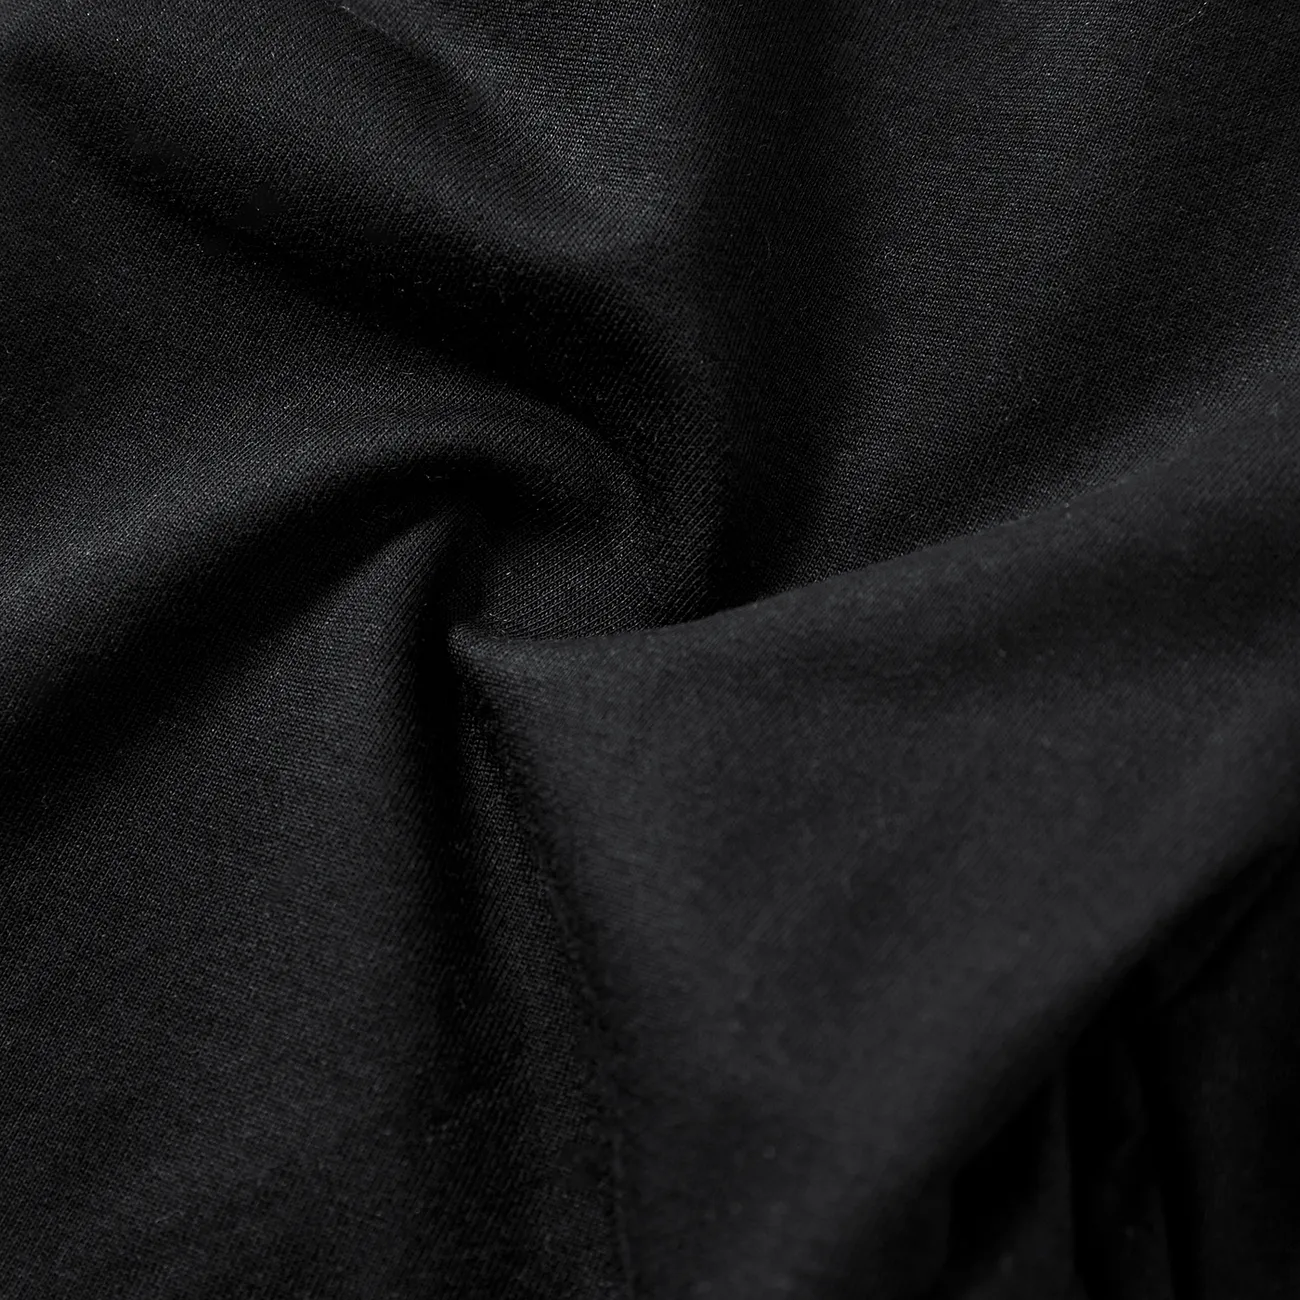 Einfarbige elastische Hosen aus Baumwolle für Mädchen/Jungen schwarz big image 1